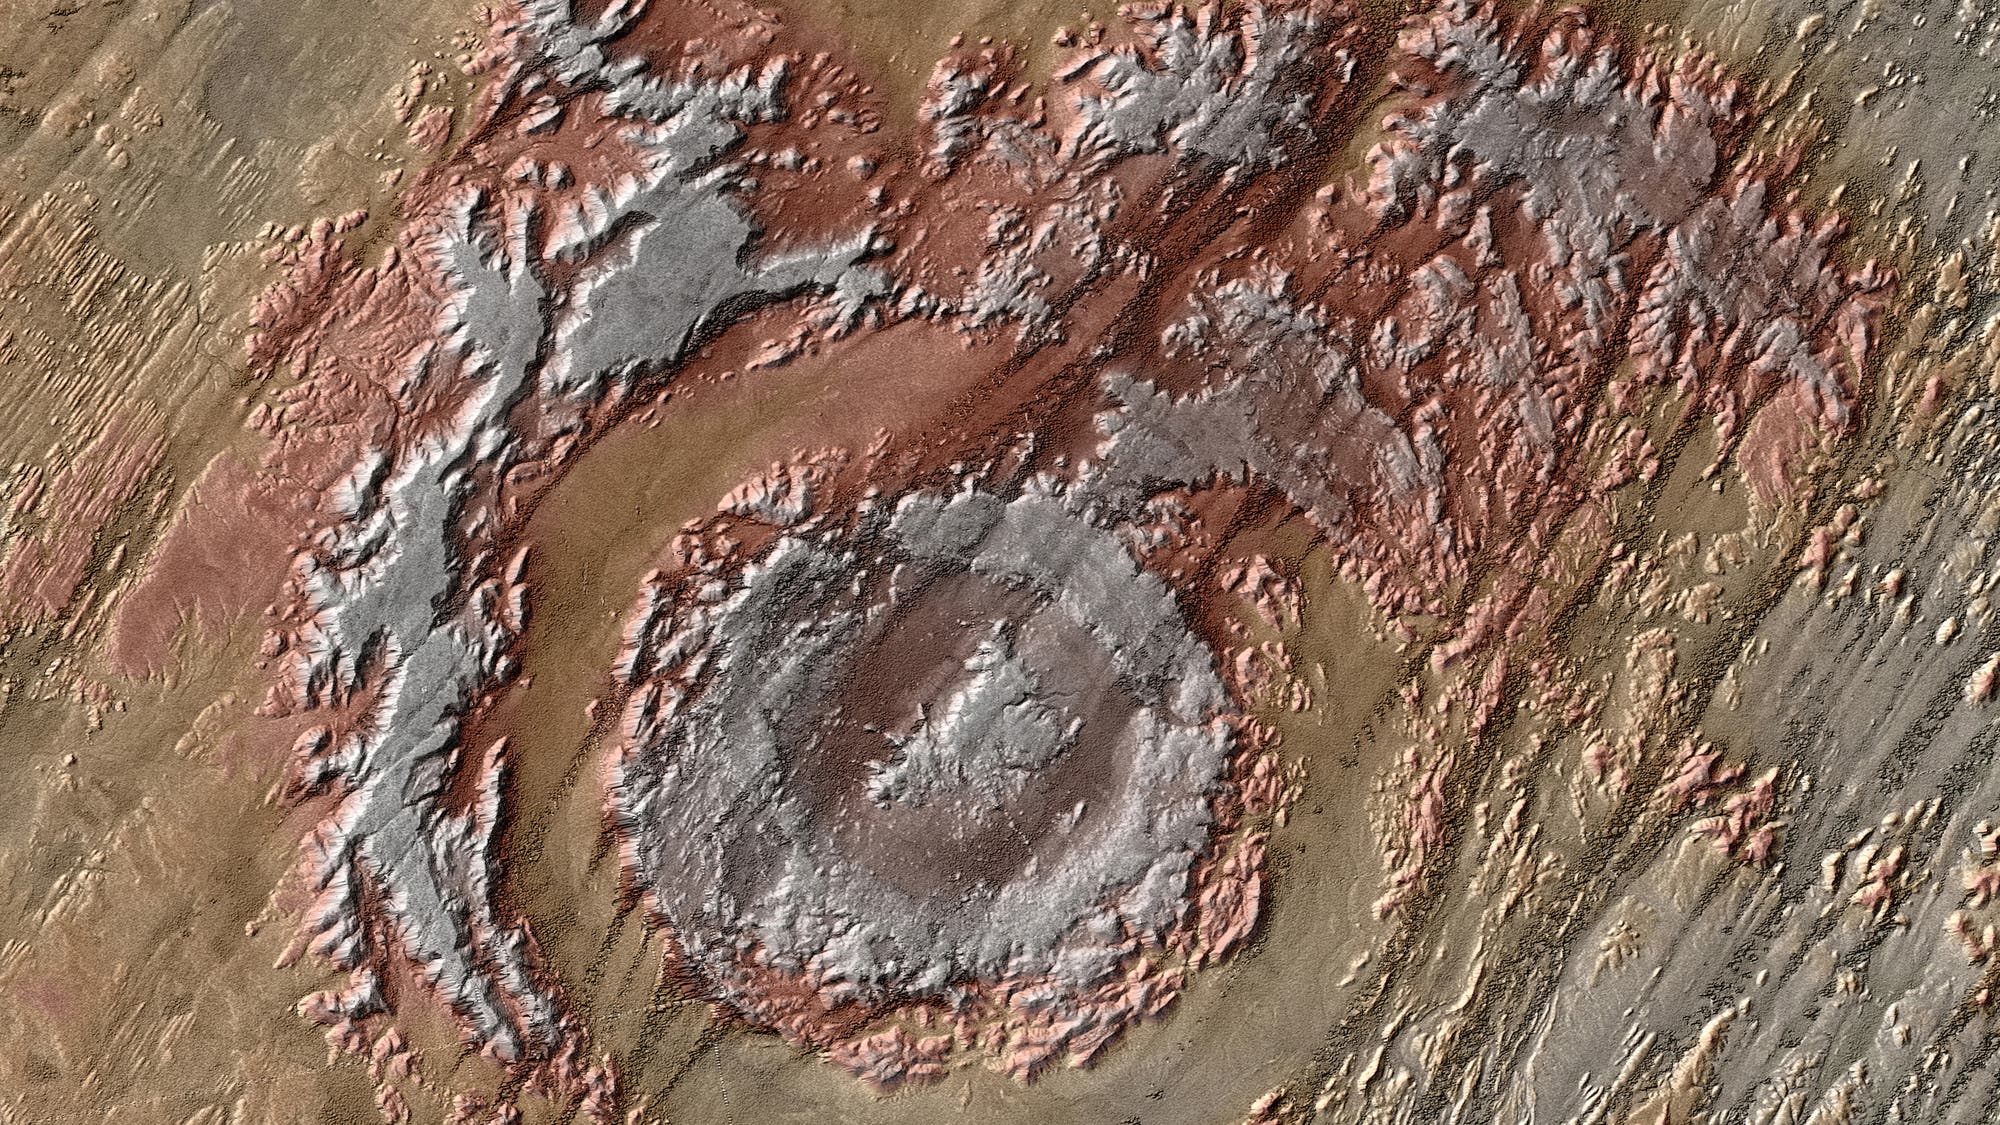 Die Aorounga-Struktur im nordafrikanischen Tschad entspricht auf den ersten Blick nur teilweise dem typischen Bild eines Einschlagkraters, denn die Spuren des kosmischen Treffers verwitterten im Laufe der Zeit beträchtlich.